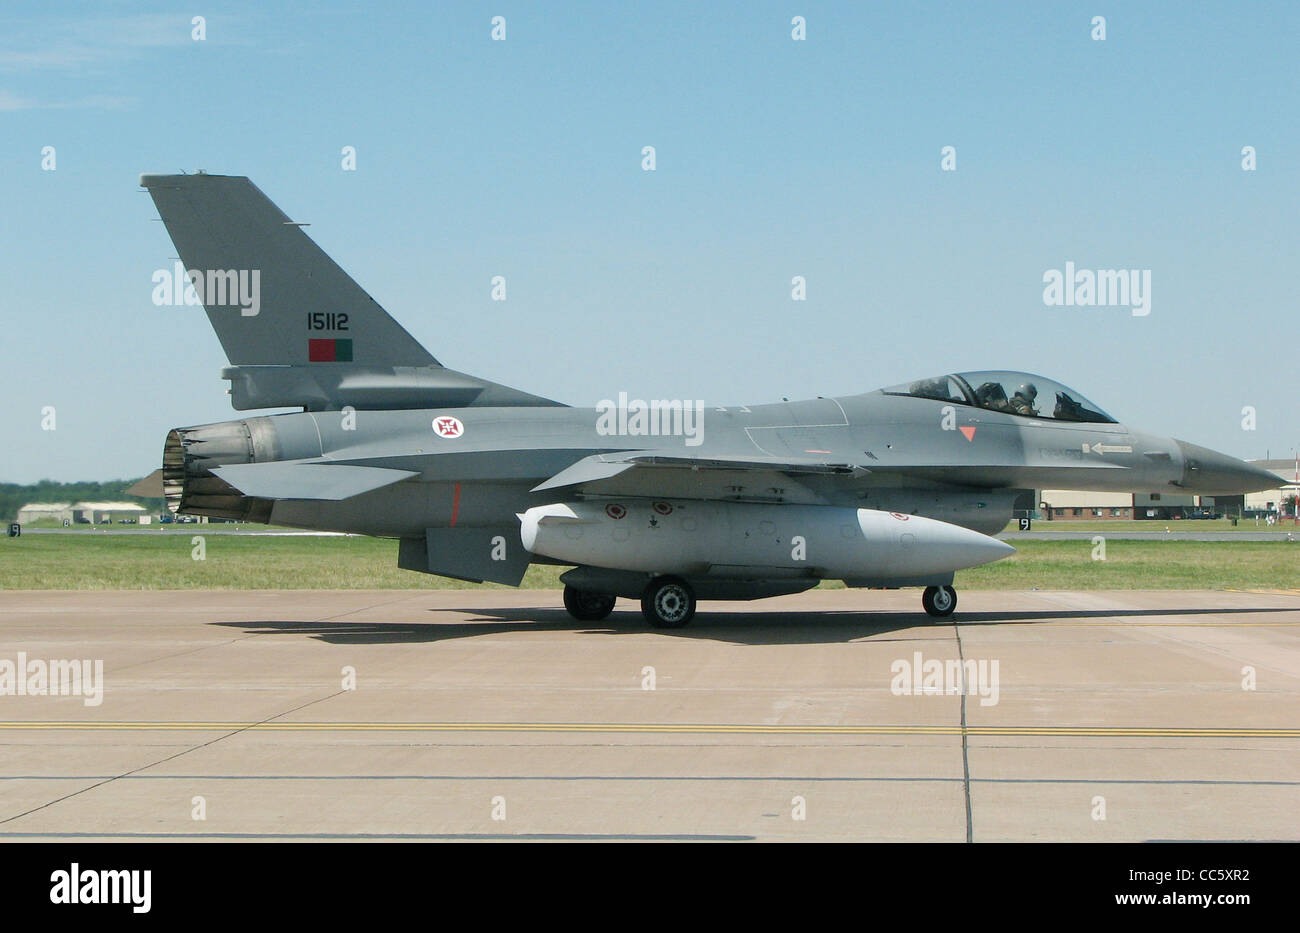 einsitzige-f-16a-fighting-falcon-id-15112-von-der-portugiesischen-luftwaffe-fur-den-start-bei-der-royal-international-ai-taxis-cc5xr2.jpg